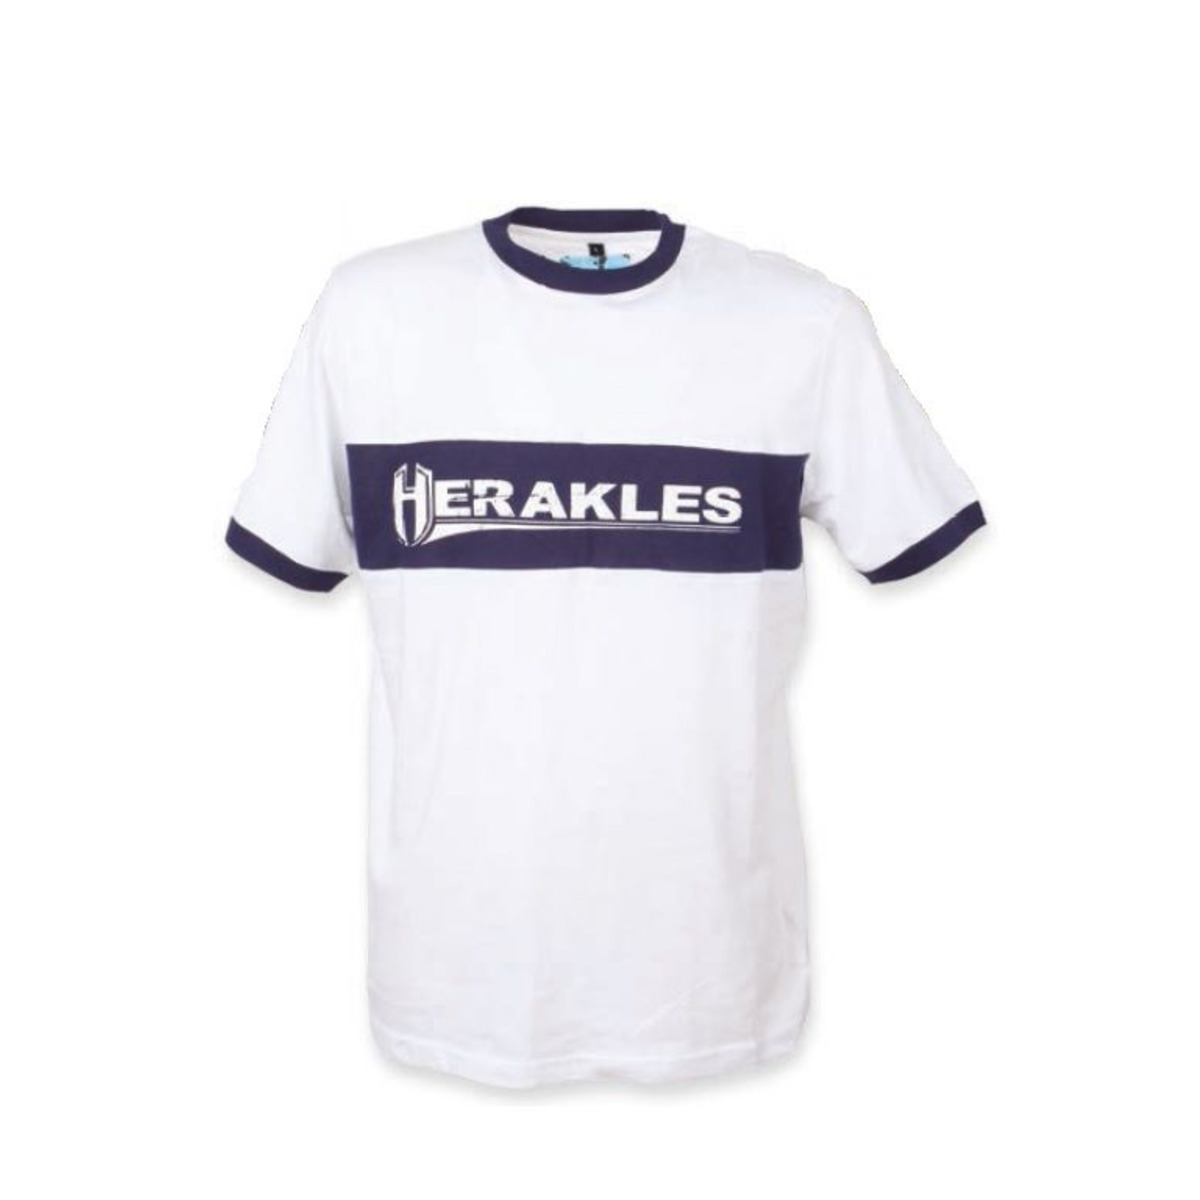 Herakles T-Shirt Bianca-Blu - L